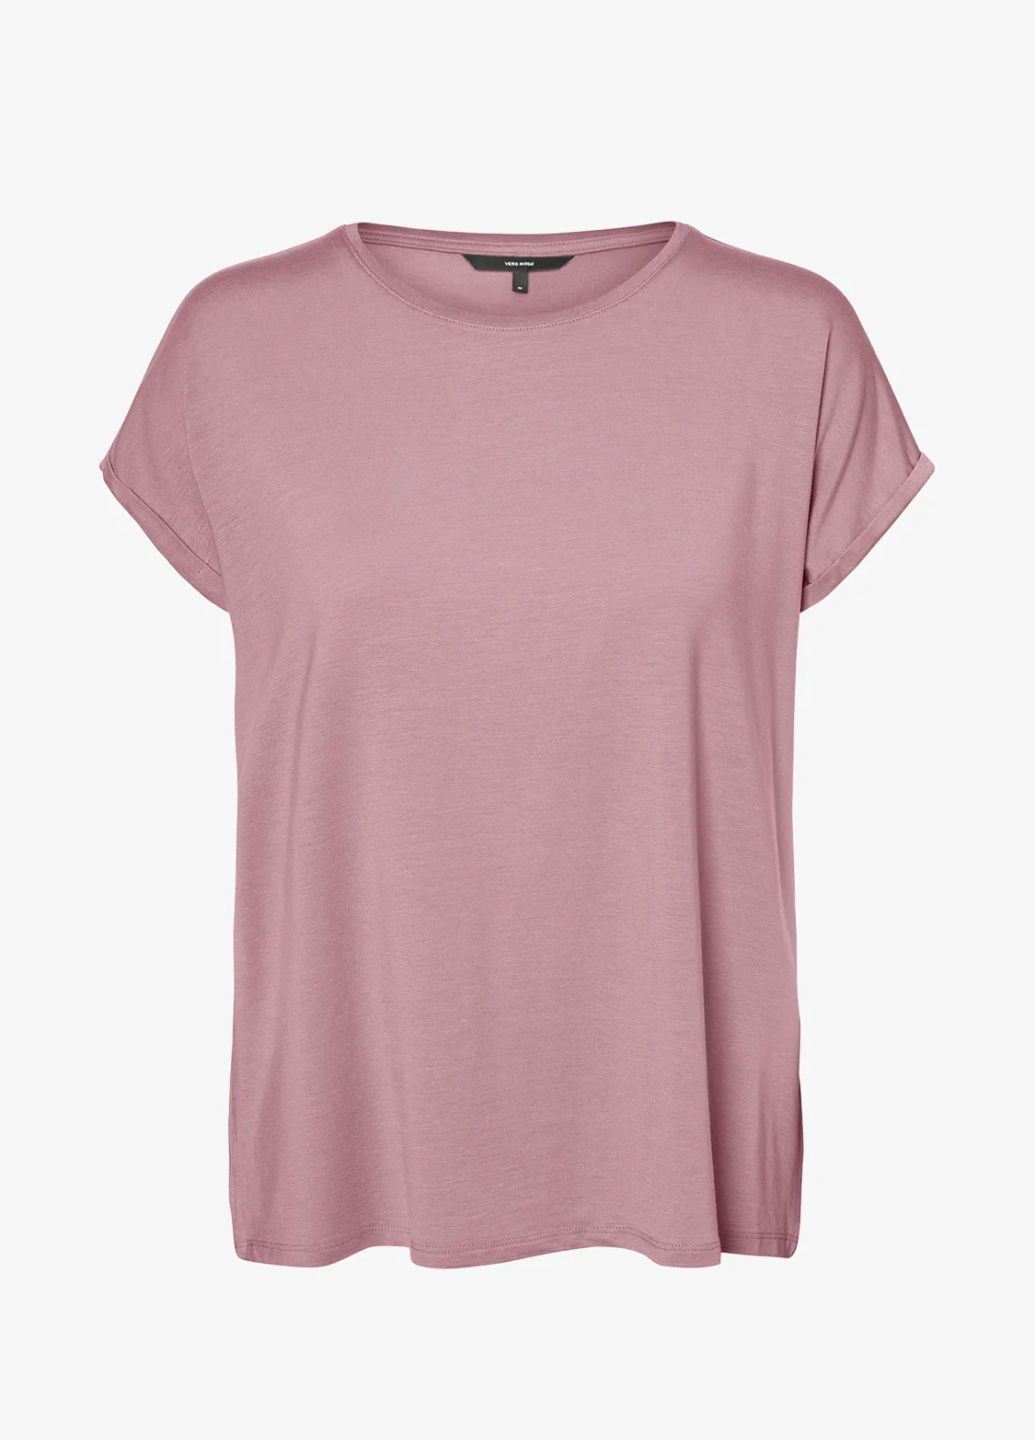 Розовая футболка женская однотонная розовая Vero Moda